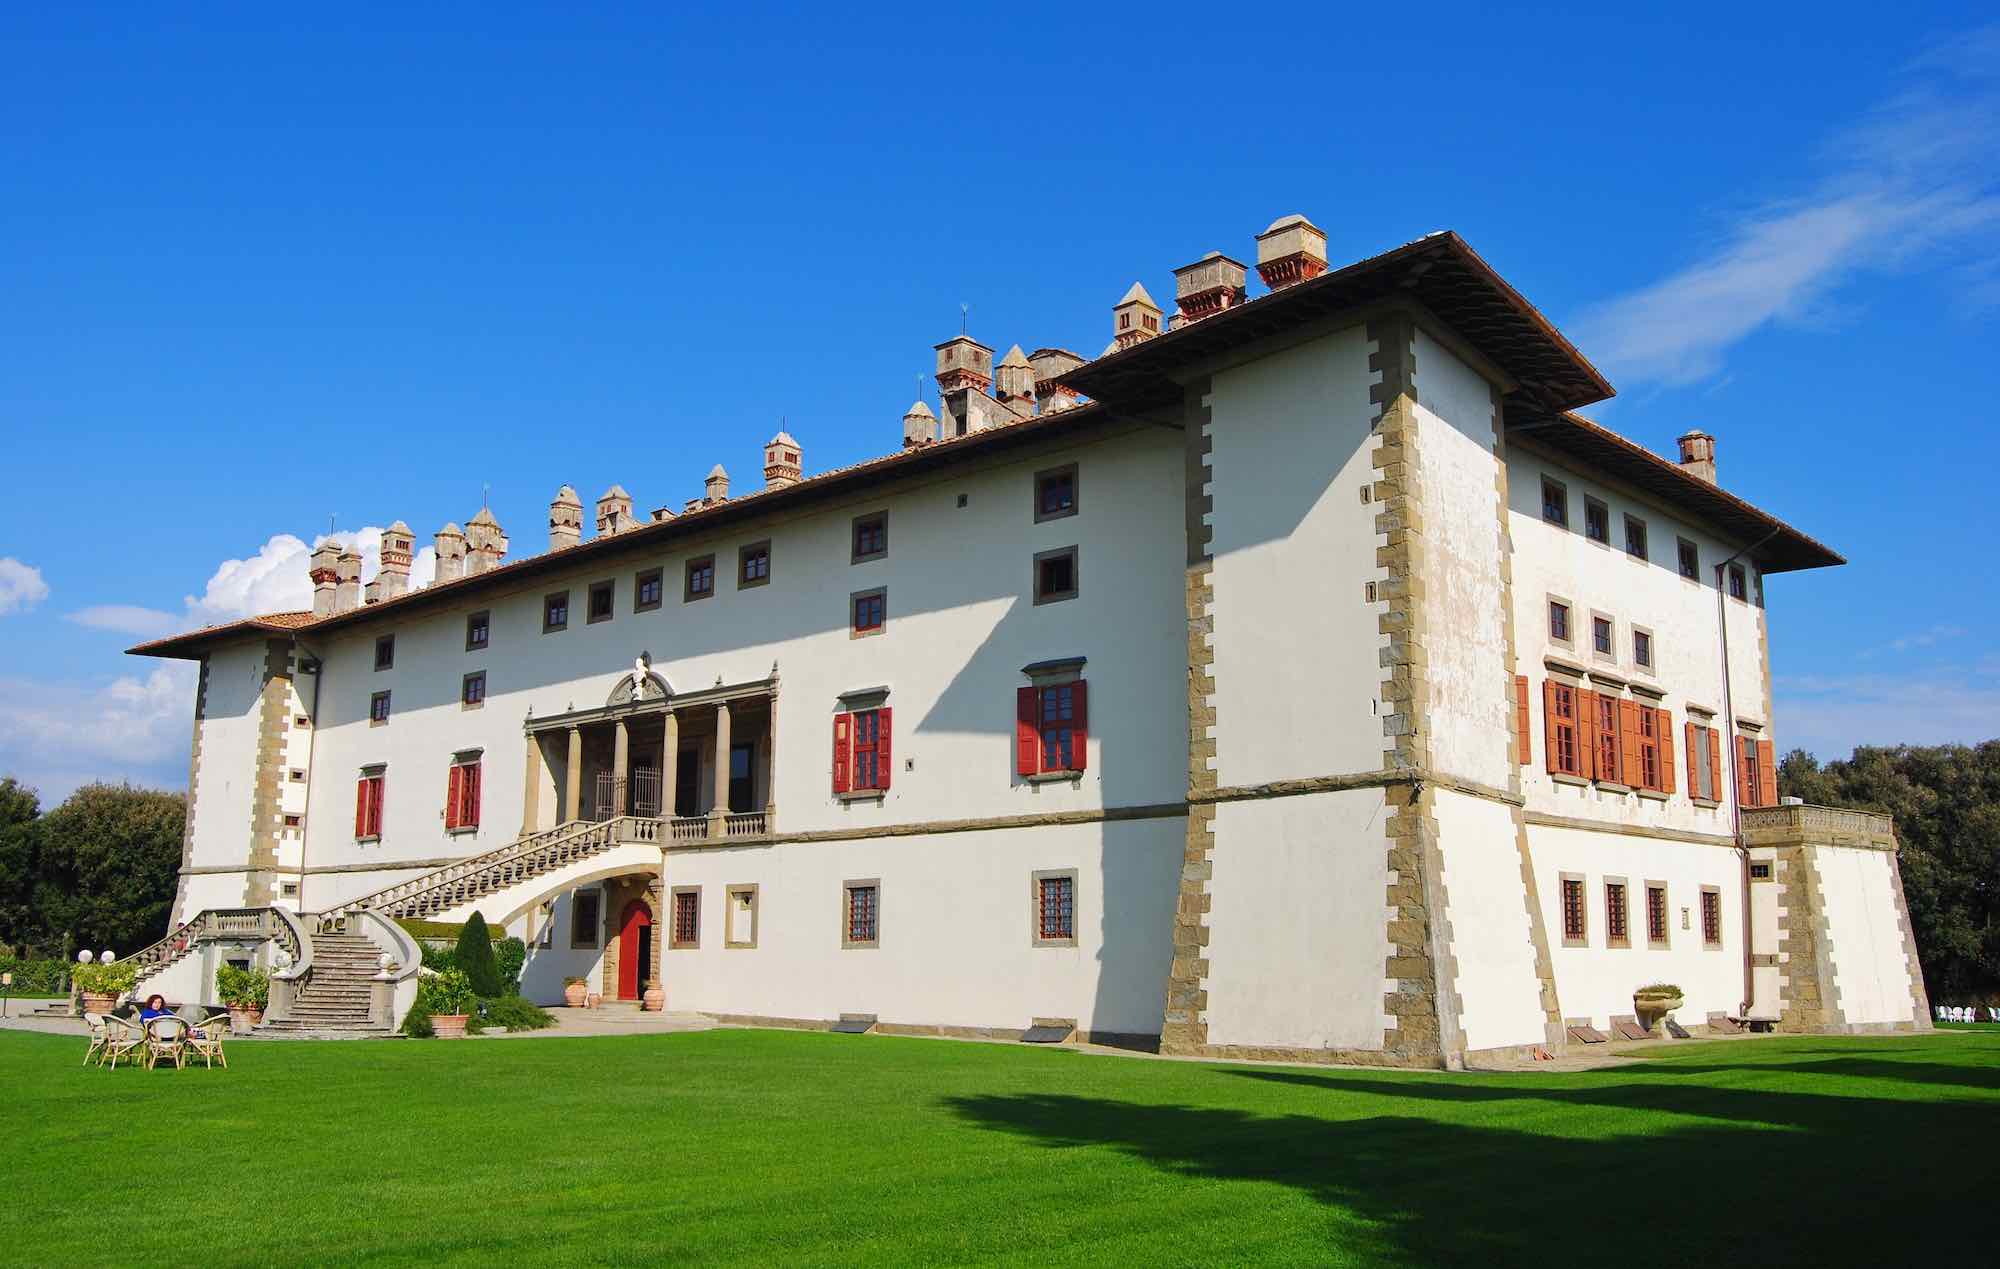 Villa la Ferdinanda ad Artimino è una delle più conosciute ville medicee vicino a Firenze